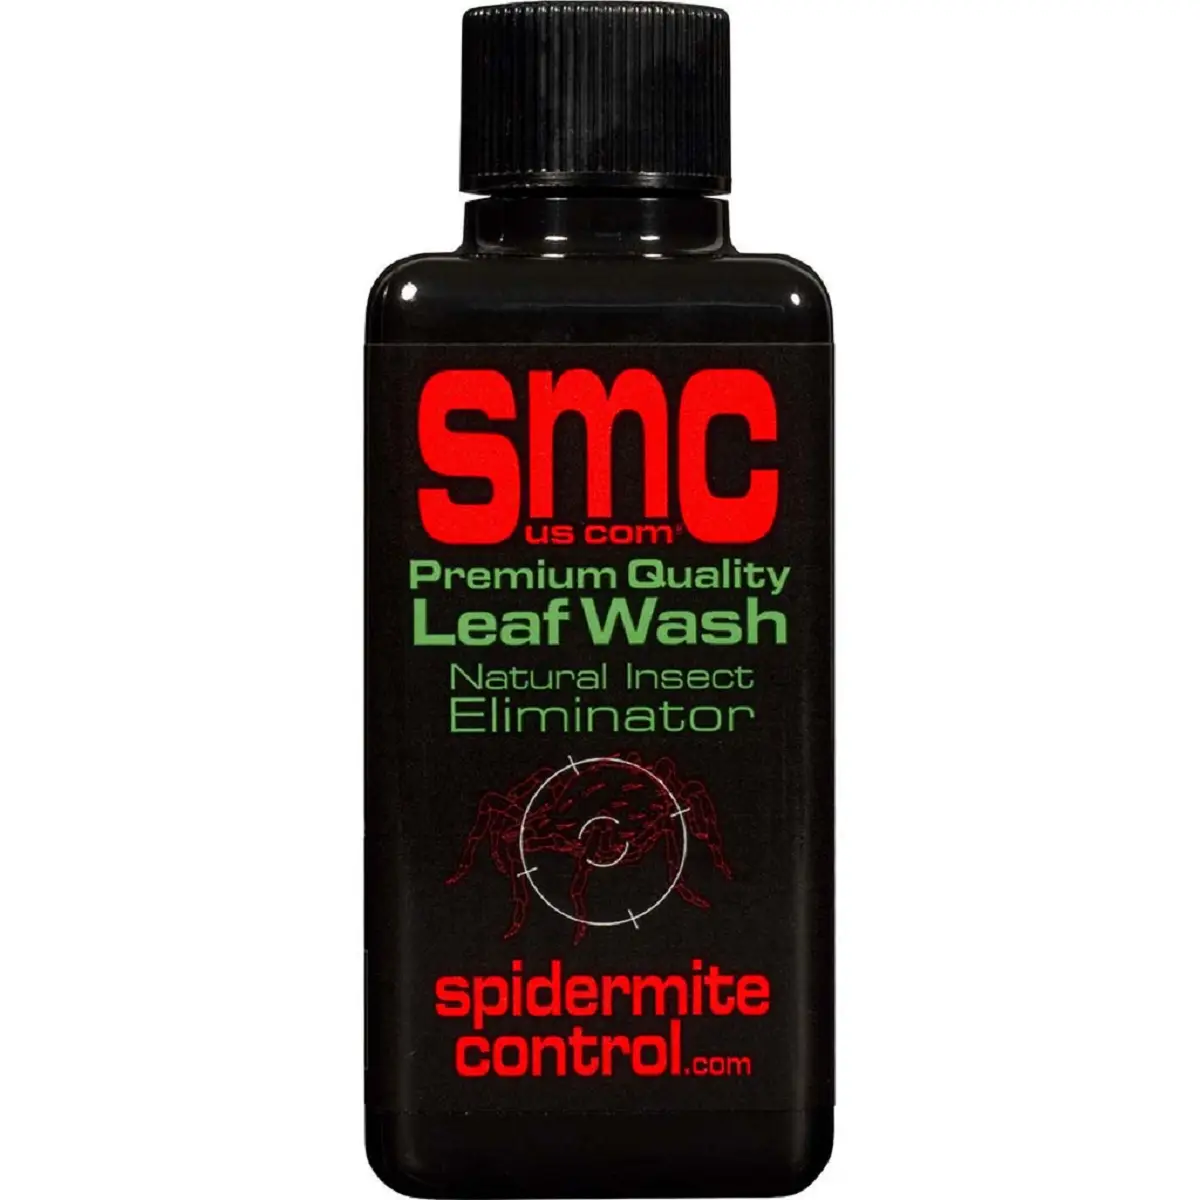 La solution anti araignées rouge Growth Technology Spidermite Control en bouteille de 100ml